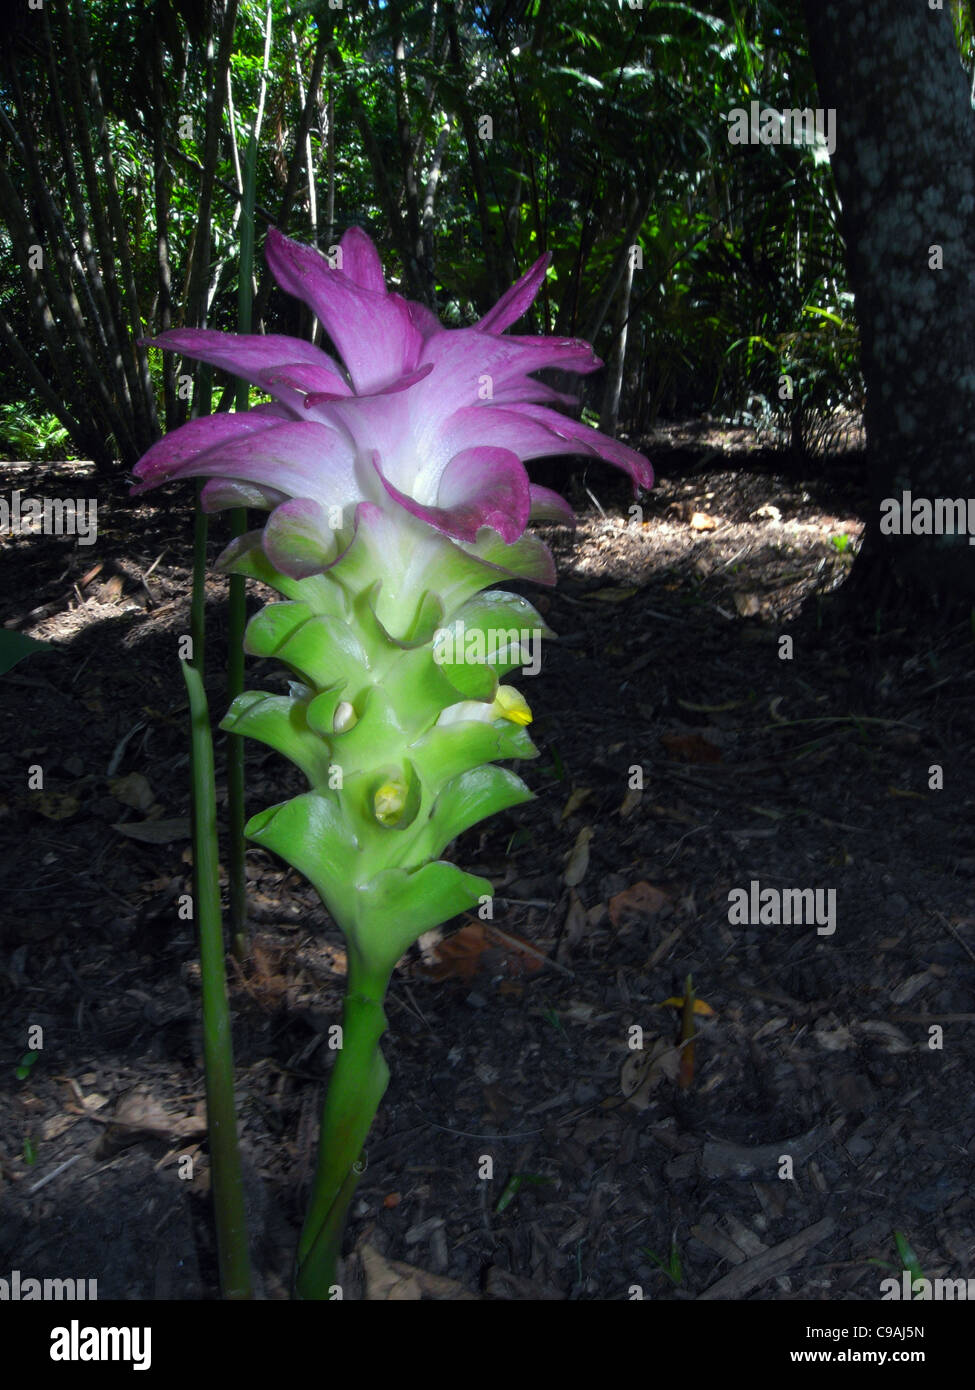 Cape York Lily (Curcuma australasica) floraison sur le sol de la forêt au début de la saison humide, près de Cairns Banque D'Images